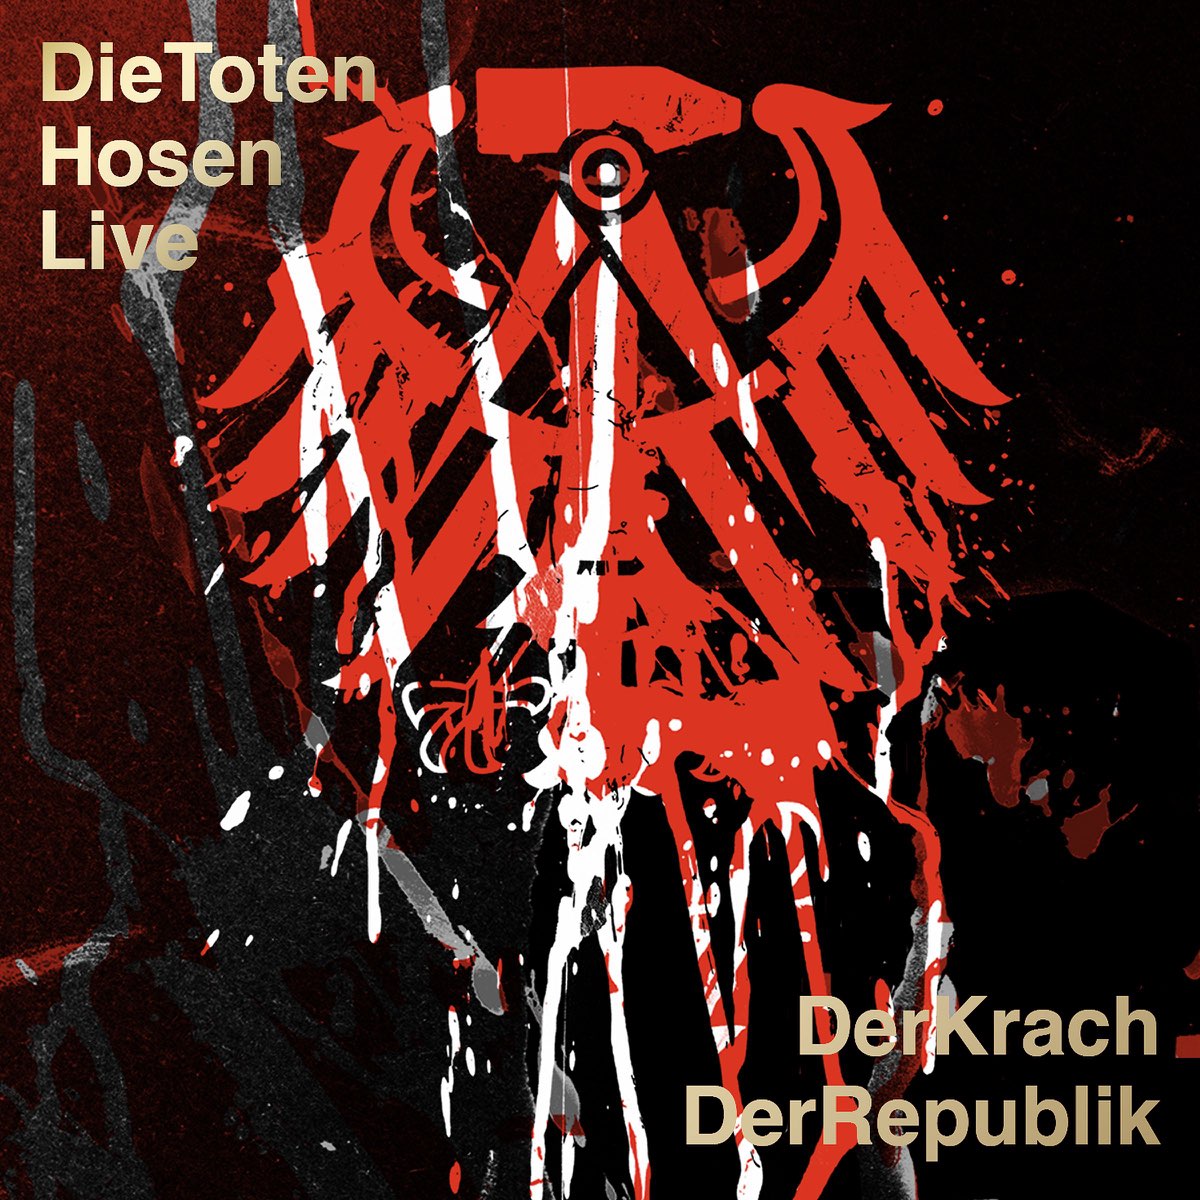 Die Toten Hosen Live: Der Krach der Republik - Album by Die Toten Hosen -  Apple Music